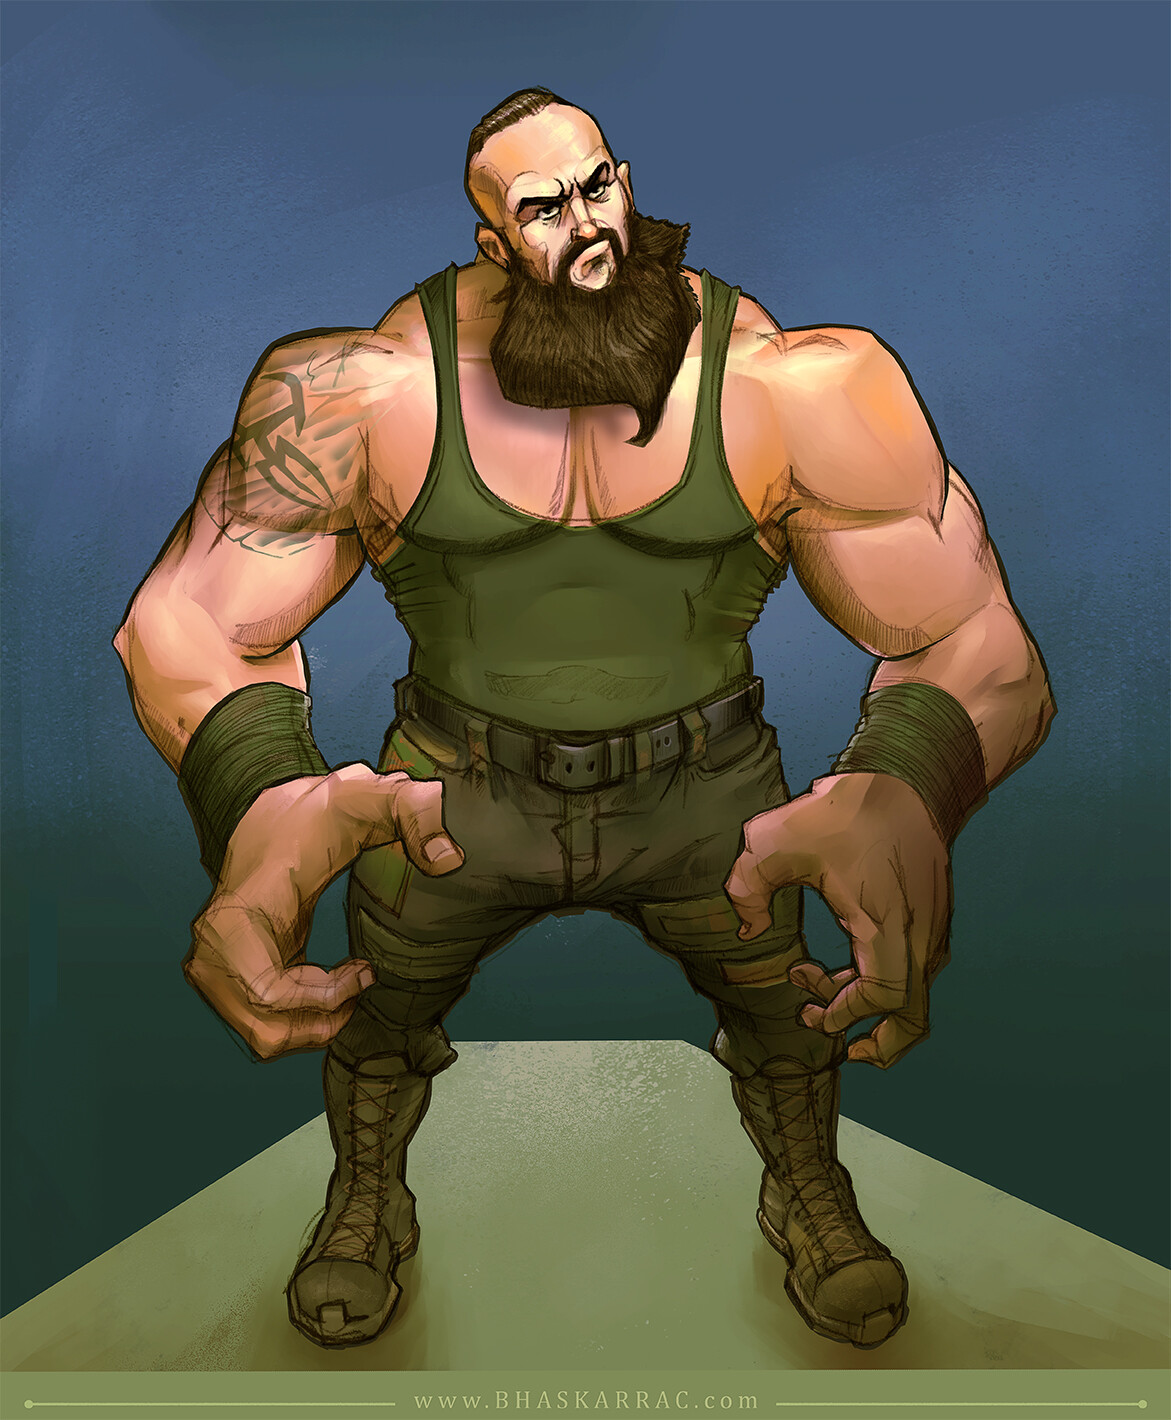 Braun Strowman (WWE Fanart)